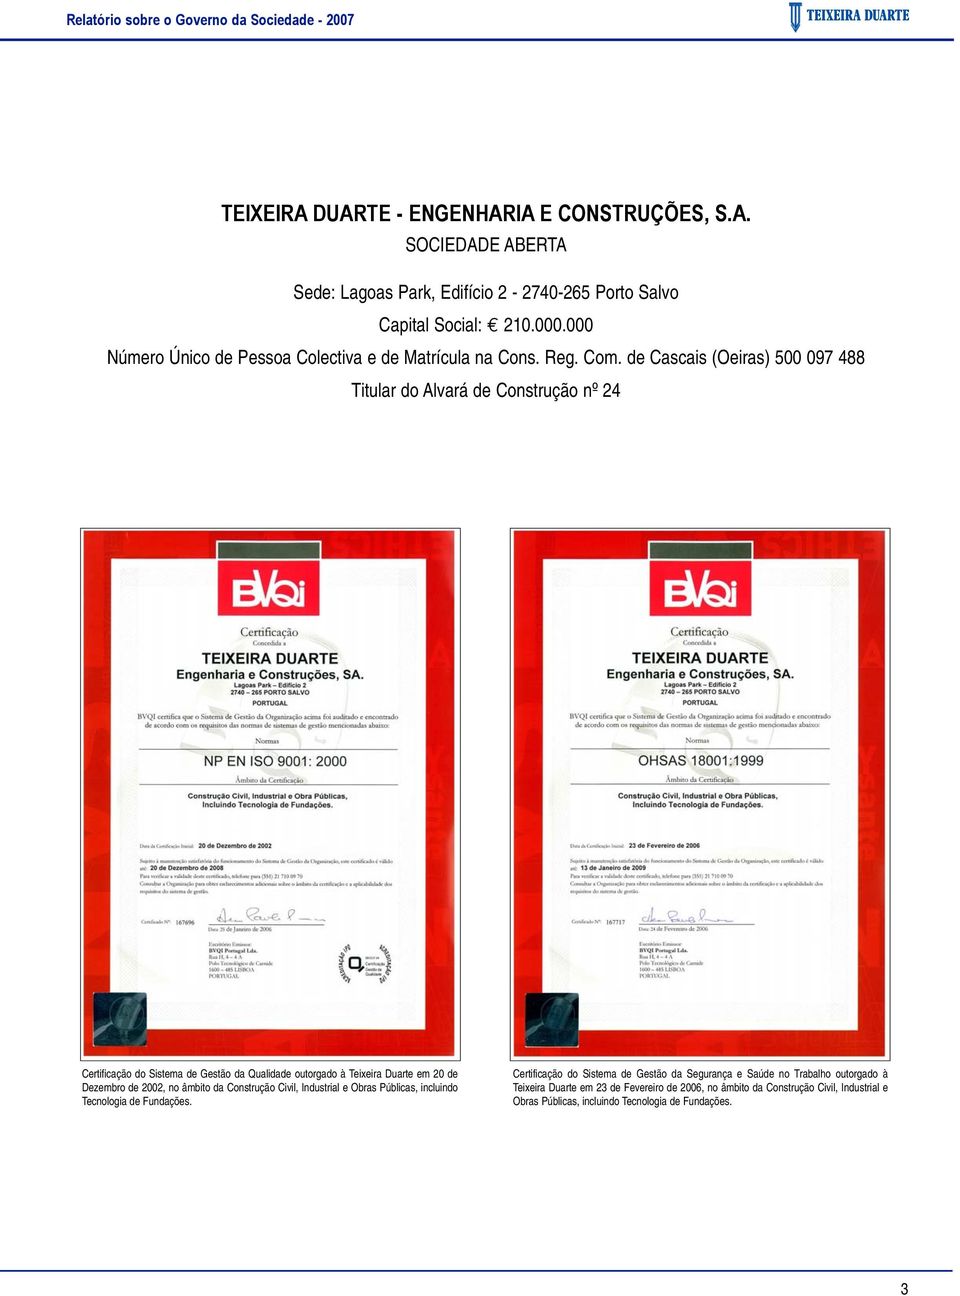 de Cascais (Oeiras) 500 097 488 Titular do Alvará de Construção nº 24 Certificação do Sistema de Gestão da Qualidade outorgado à Teixeira Duarte em 20 de Dezembro de 2002, no